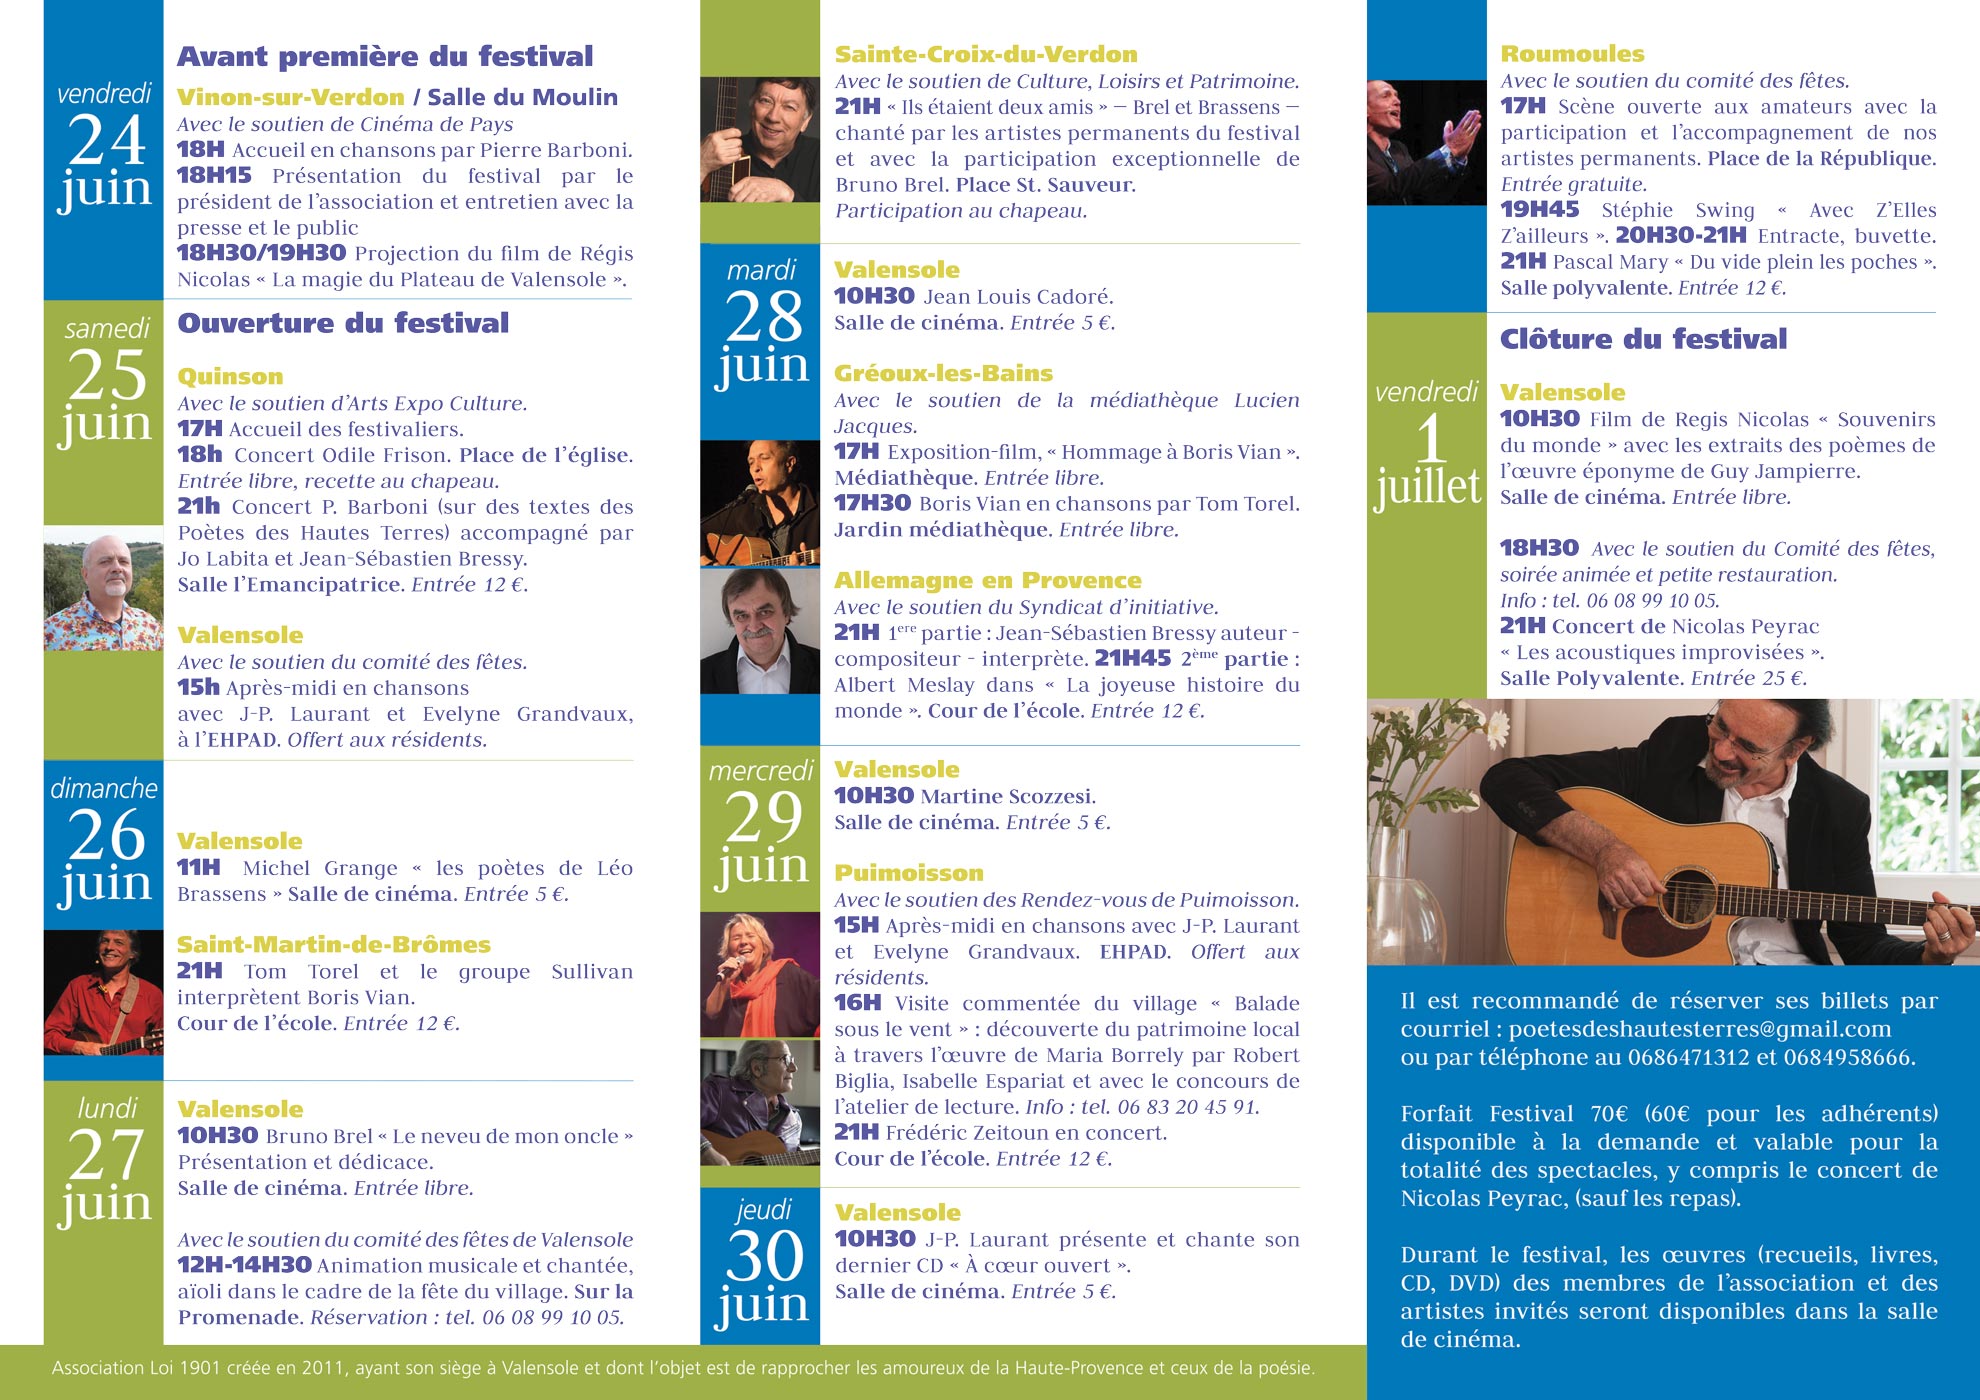 Martine Scozzesi chantera au Festival Poésie et Chansons au Pays des Lavandes